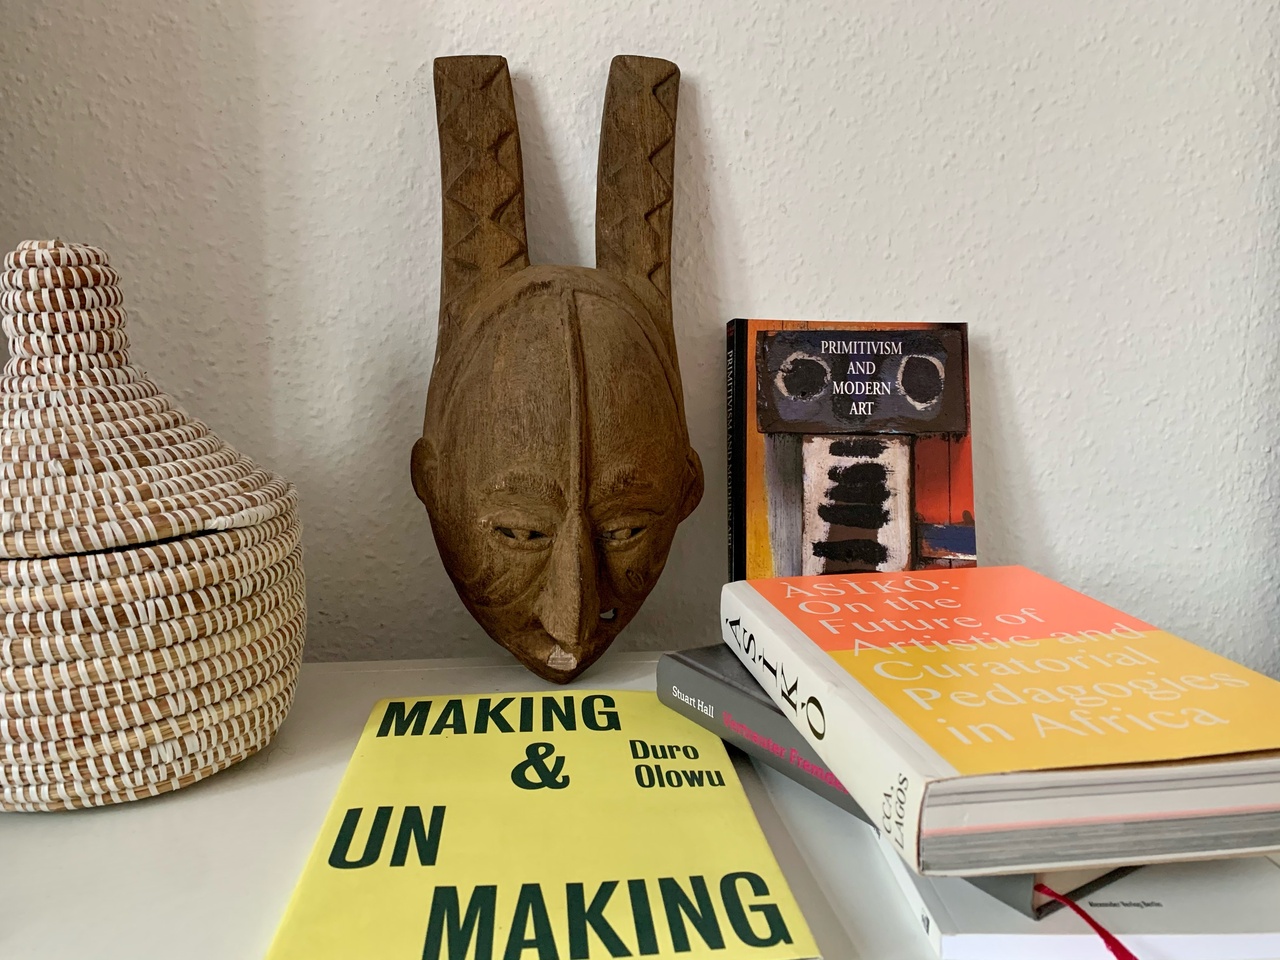 Maske der Igbo, heute Nigeria, mit zufälliger Buchauswahl der Autorin in ihrer Frankfurter Wohnung.